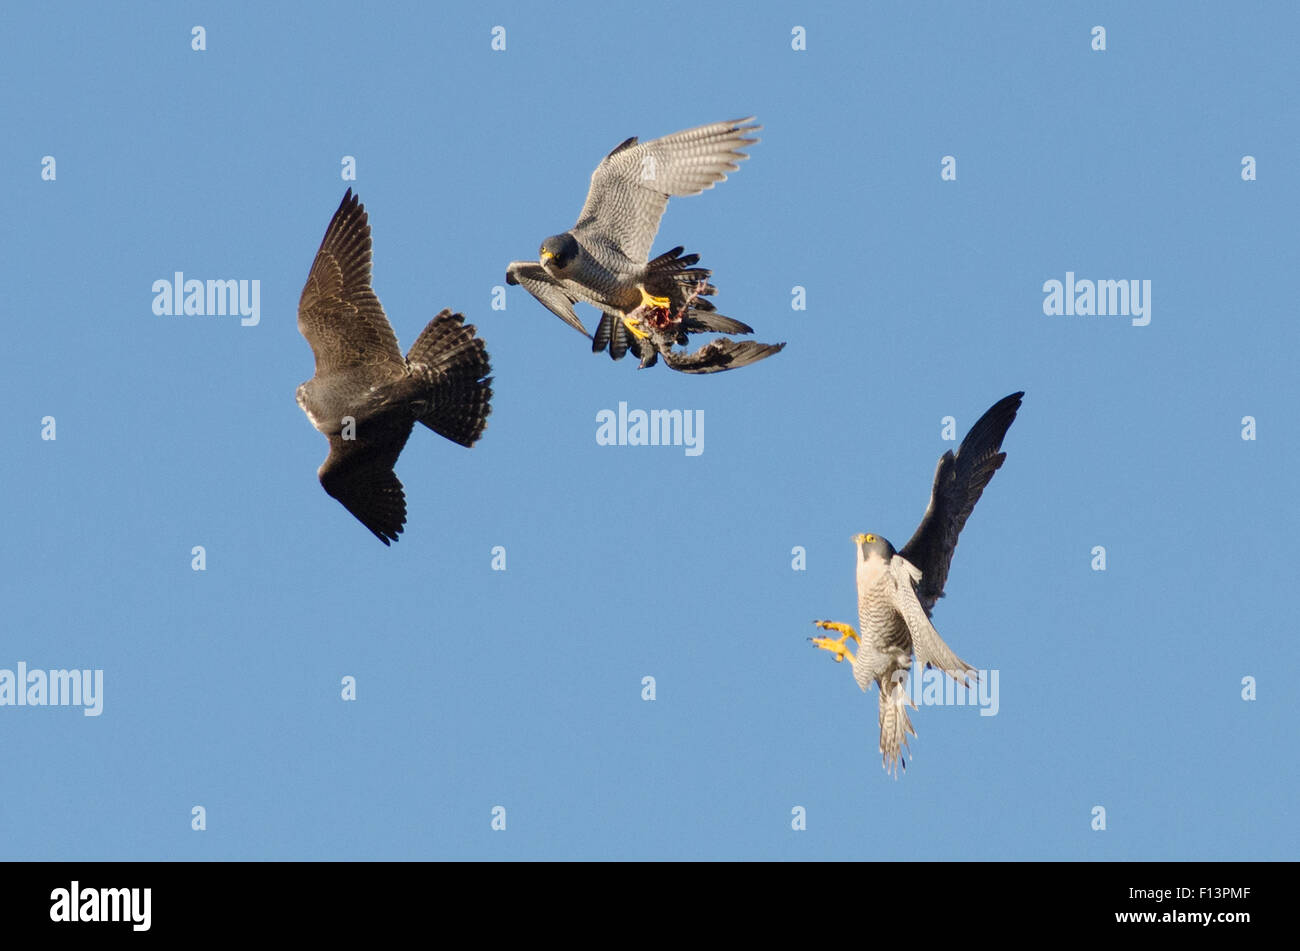 Mâle adulte, le faucon pèlerin (Falco peregrinus) en vol avec les proies, poursuivi par mâle juvénile et adulte de sexe féminin. Bristol, Royaume-Uni. Décembre. Banque D'Images